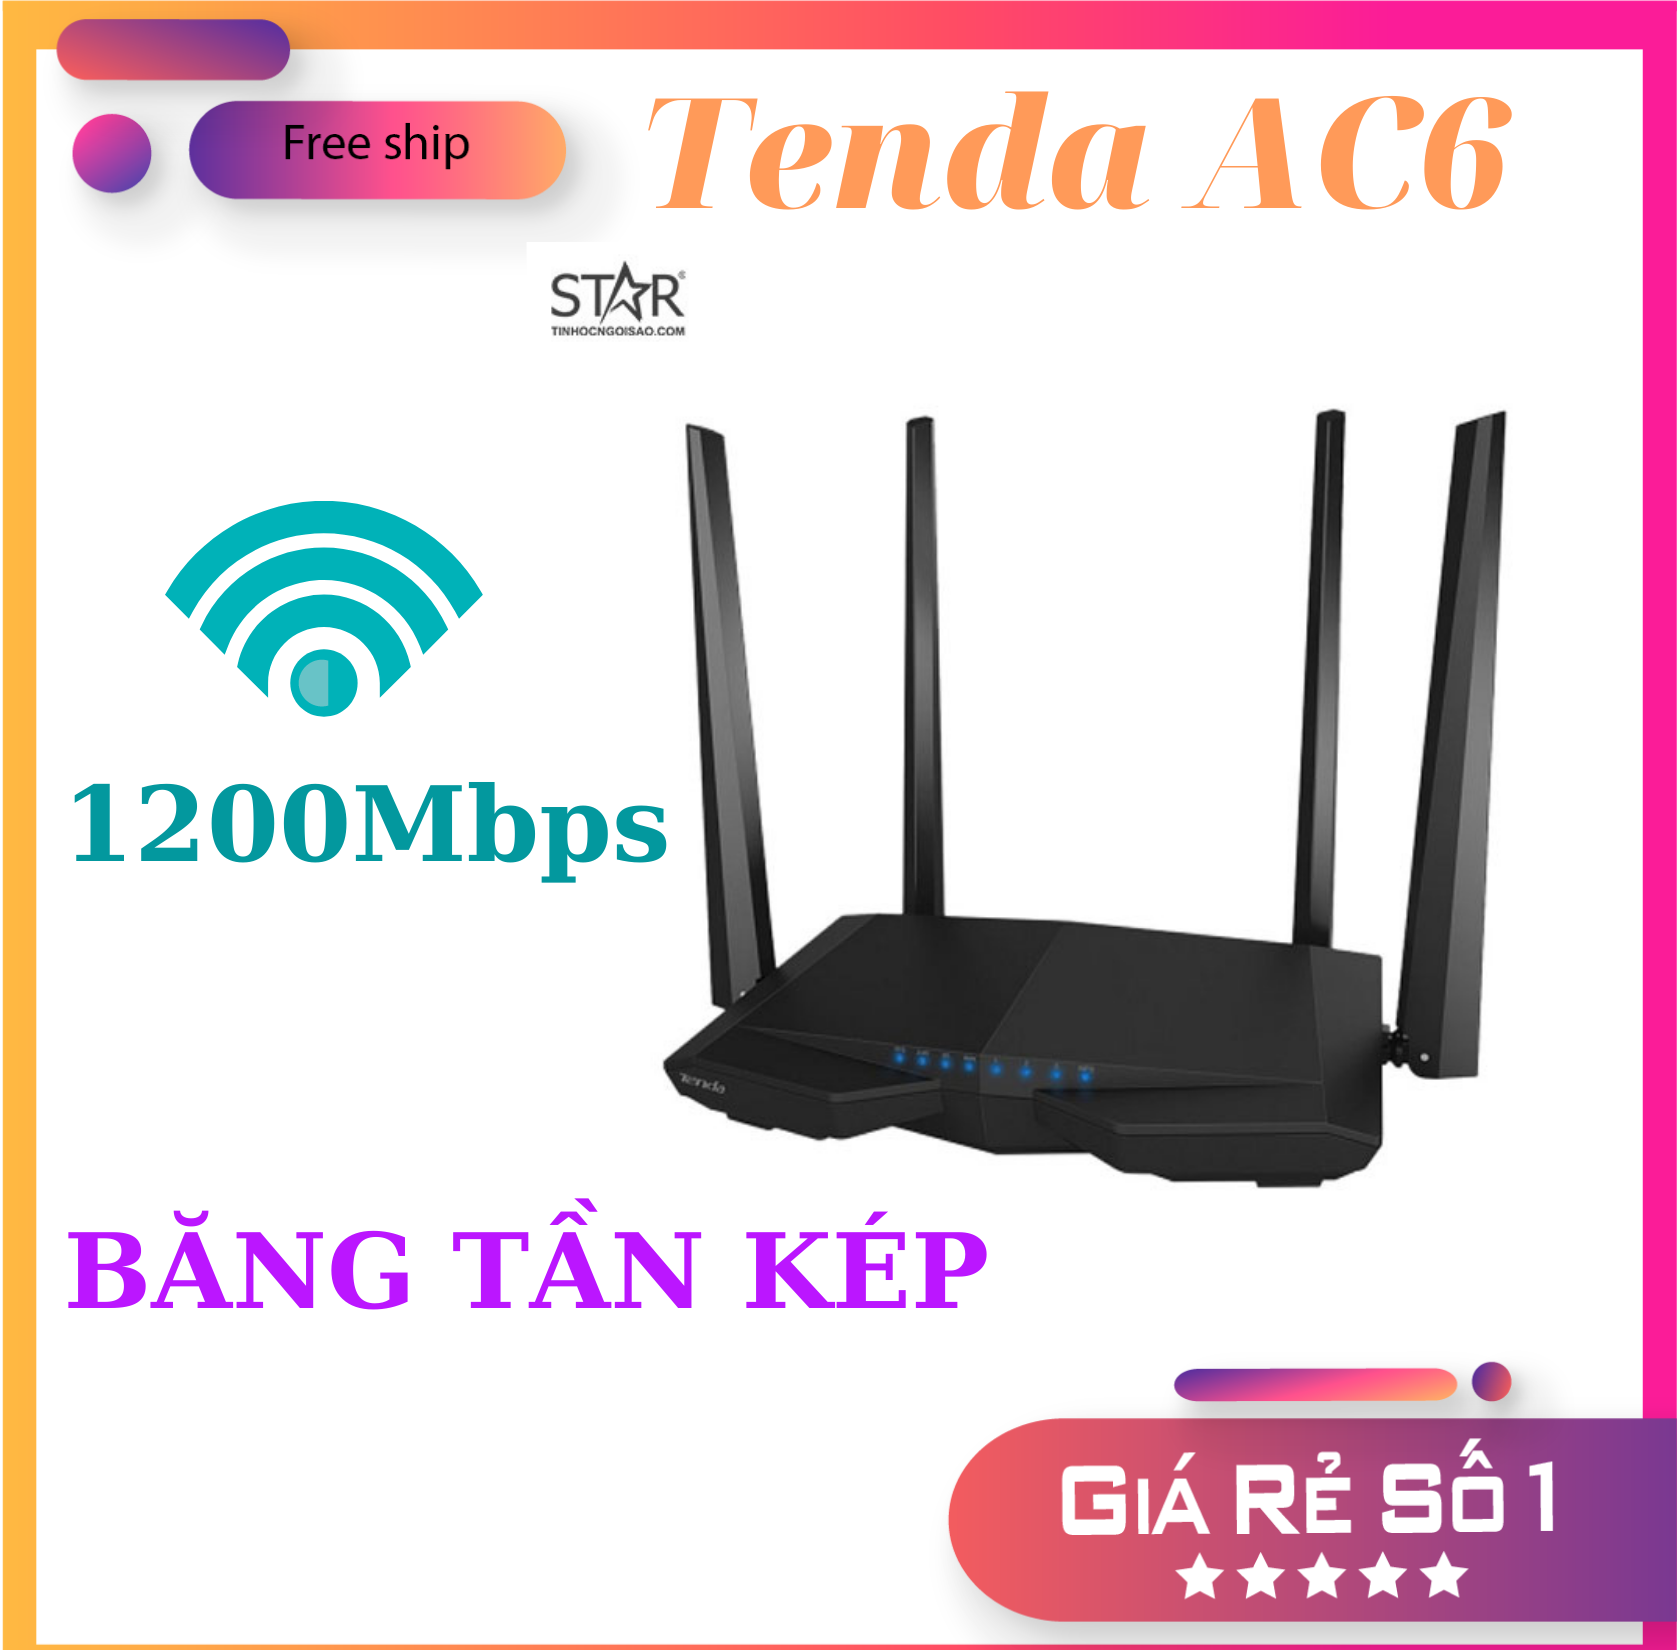 Bộ phát wifi Tenda AC6 4 râu băng tần kép chuẩn AC1200 Mbps sóng xuyên tường, router wifi tenda, Modem wifi tenda ac6